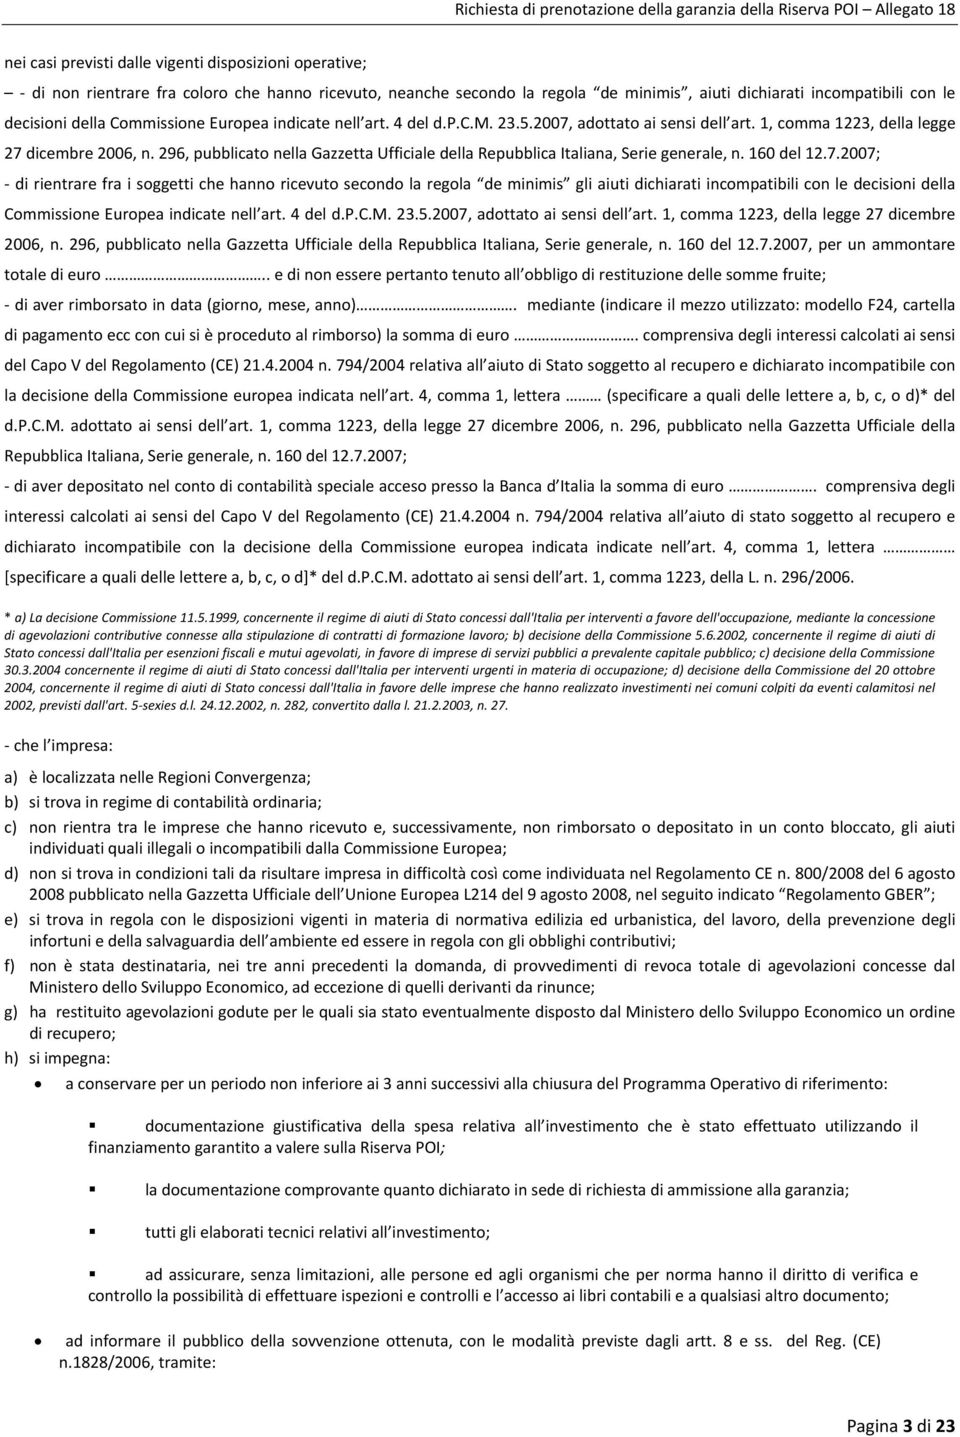 296, pubblicato nella Gazzetta Ufficiale della Repubblica Italiana, Serie generale, n. 160 del 12.7.